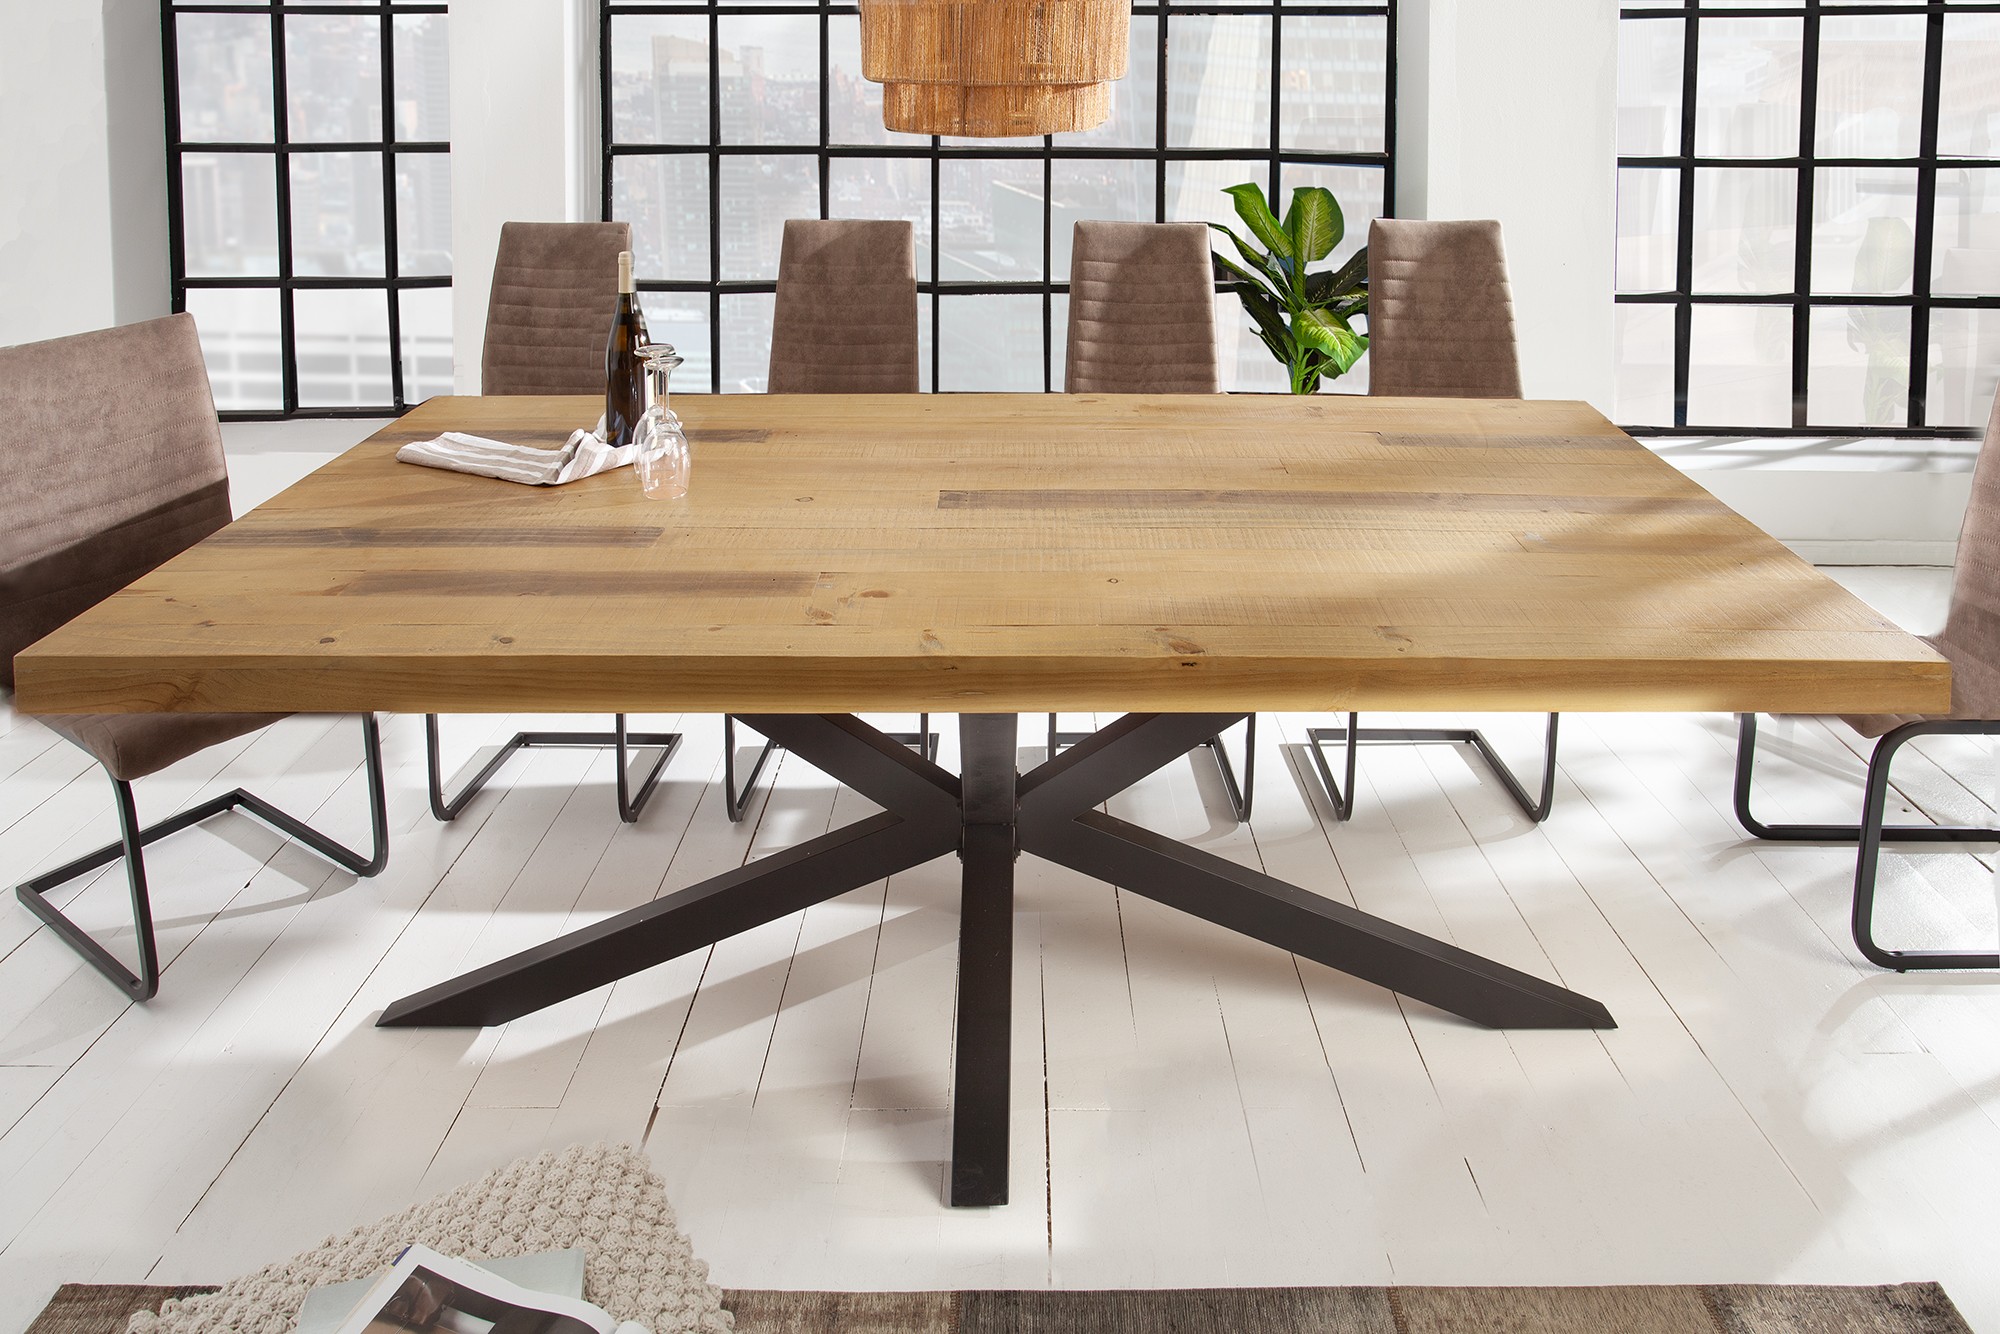 Estila Industriálny jedálenský stôl Comedor z masívneho dreva v hnedej farbe s čiernymi kovovými obdĺžnikovými nožičkami 200 cm